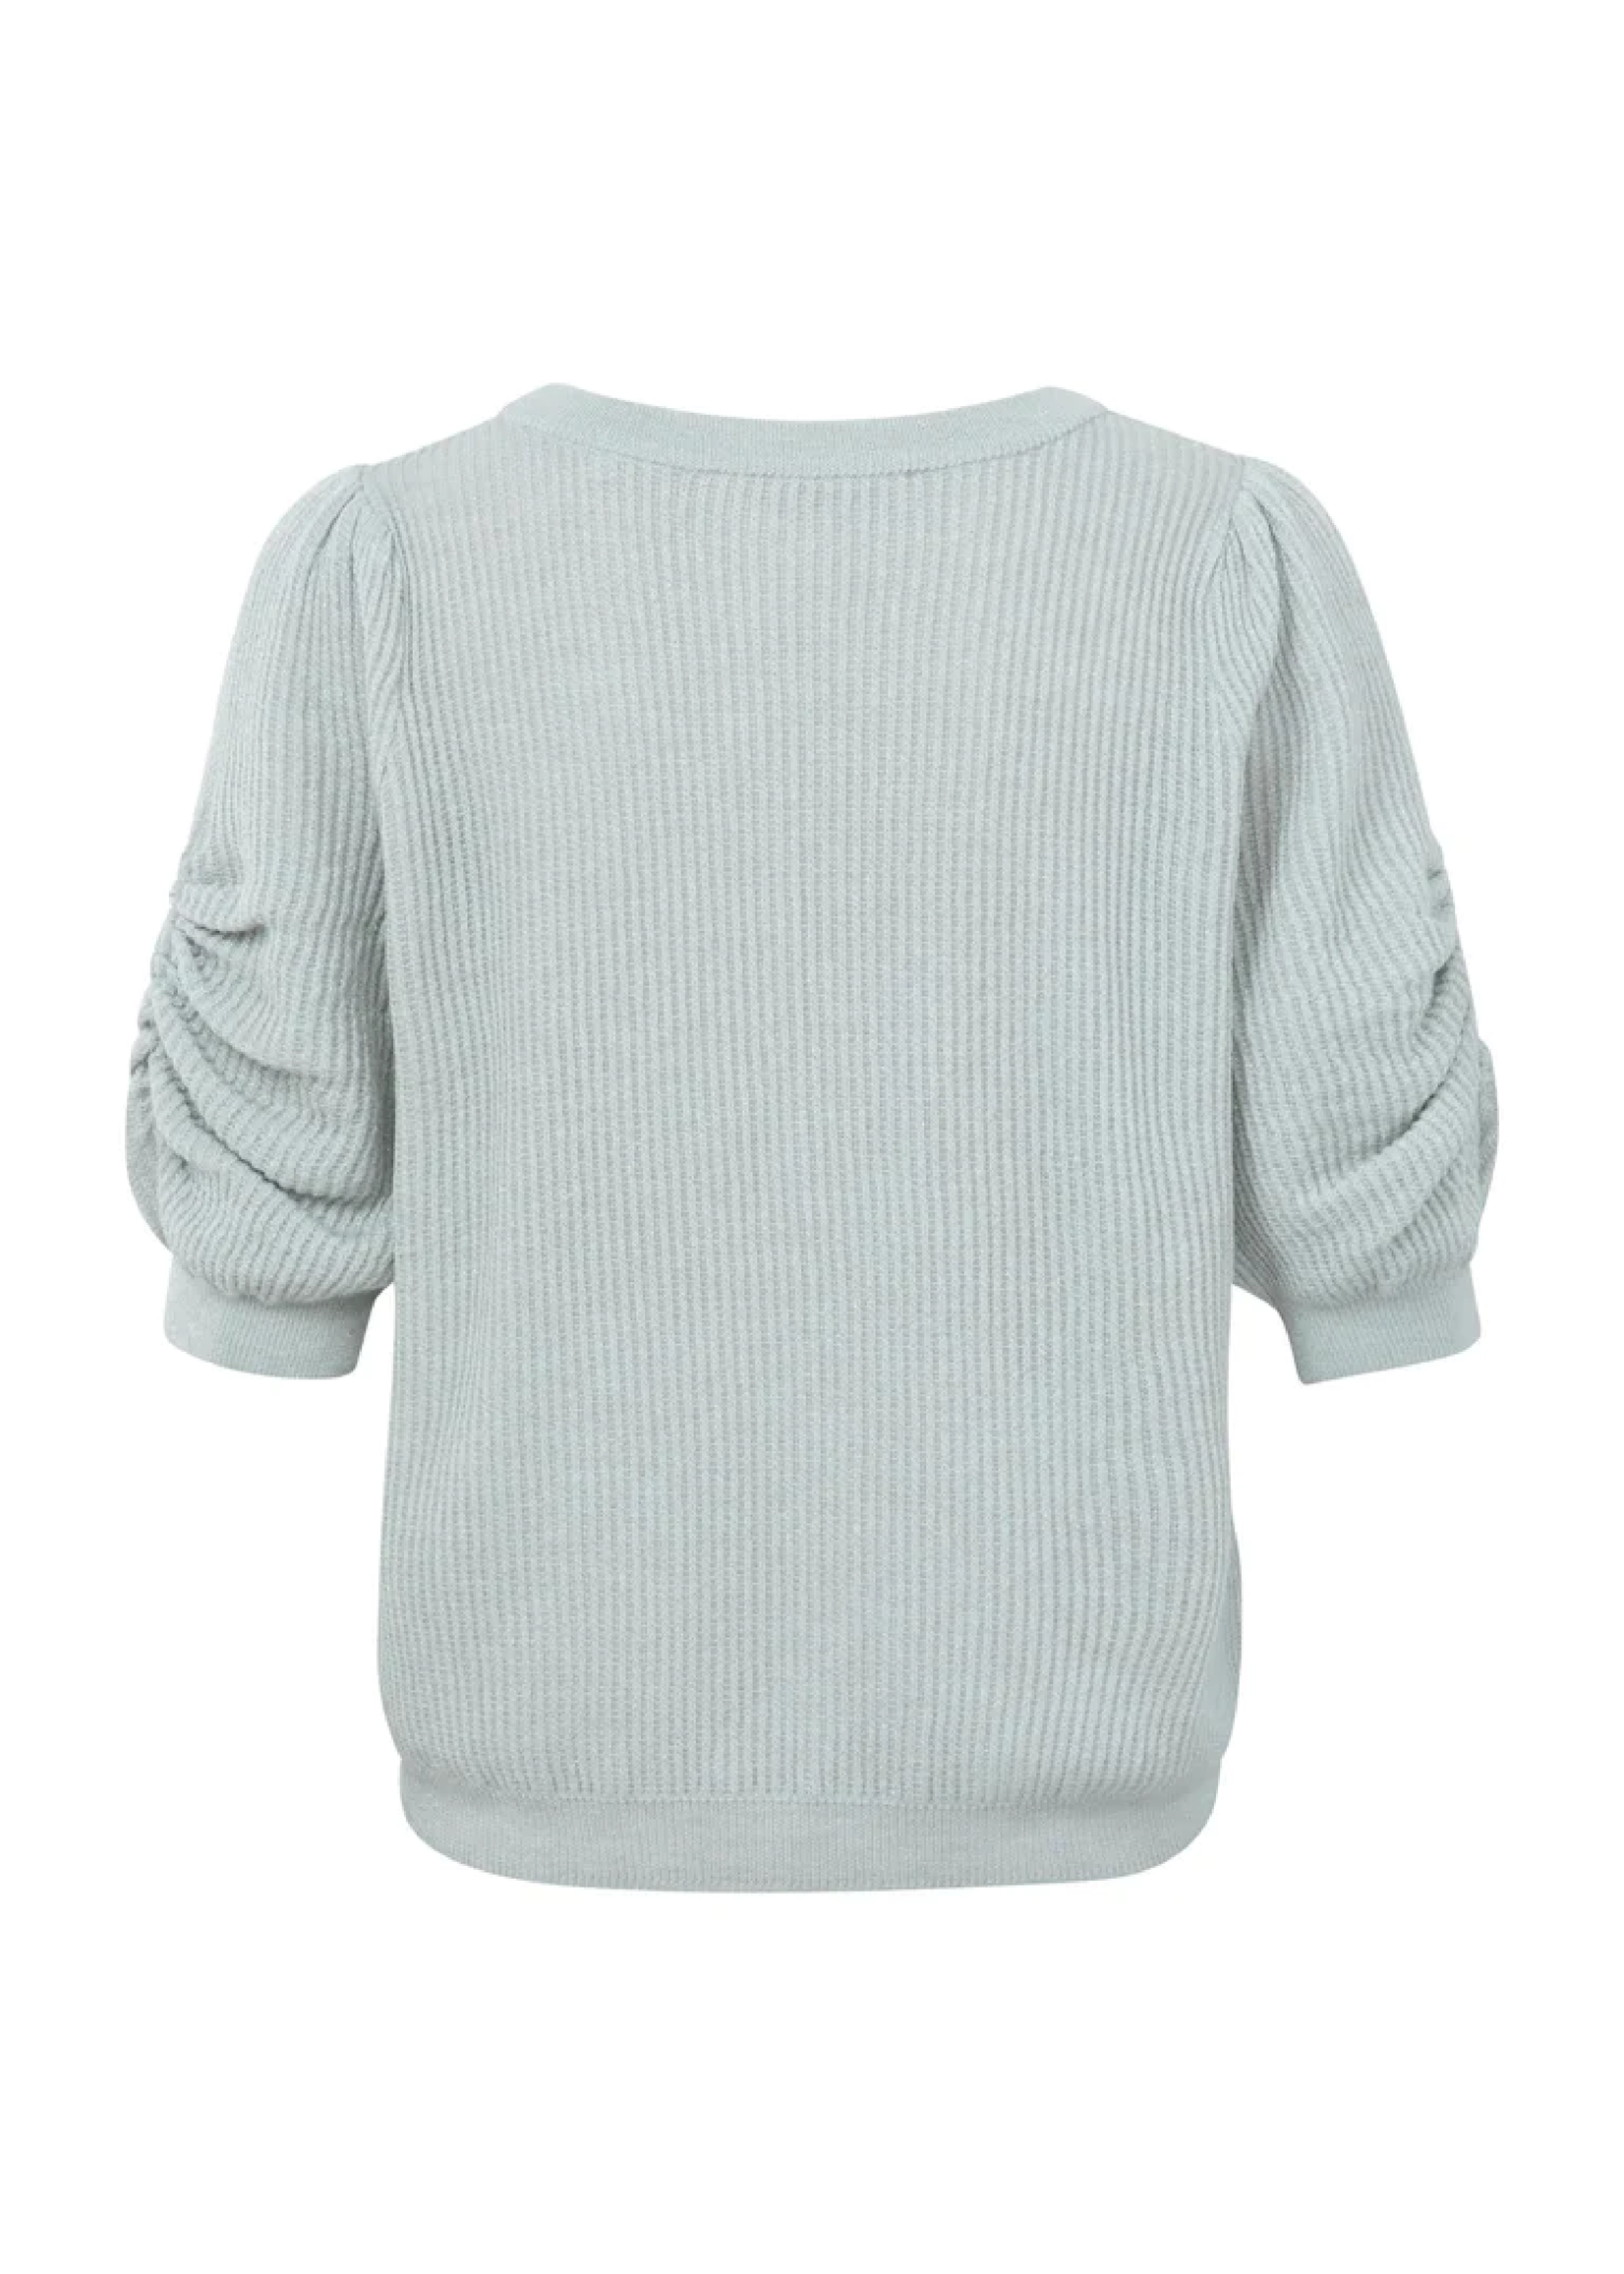 Yaya Yaya sweater w/lurex yarn & puff sleeve 1000113